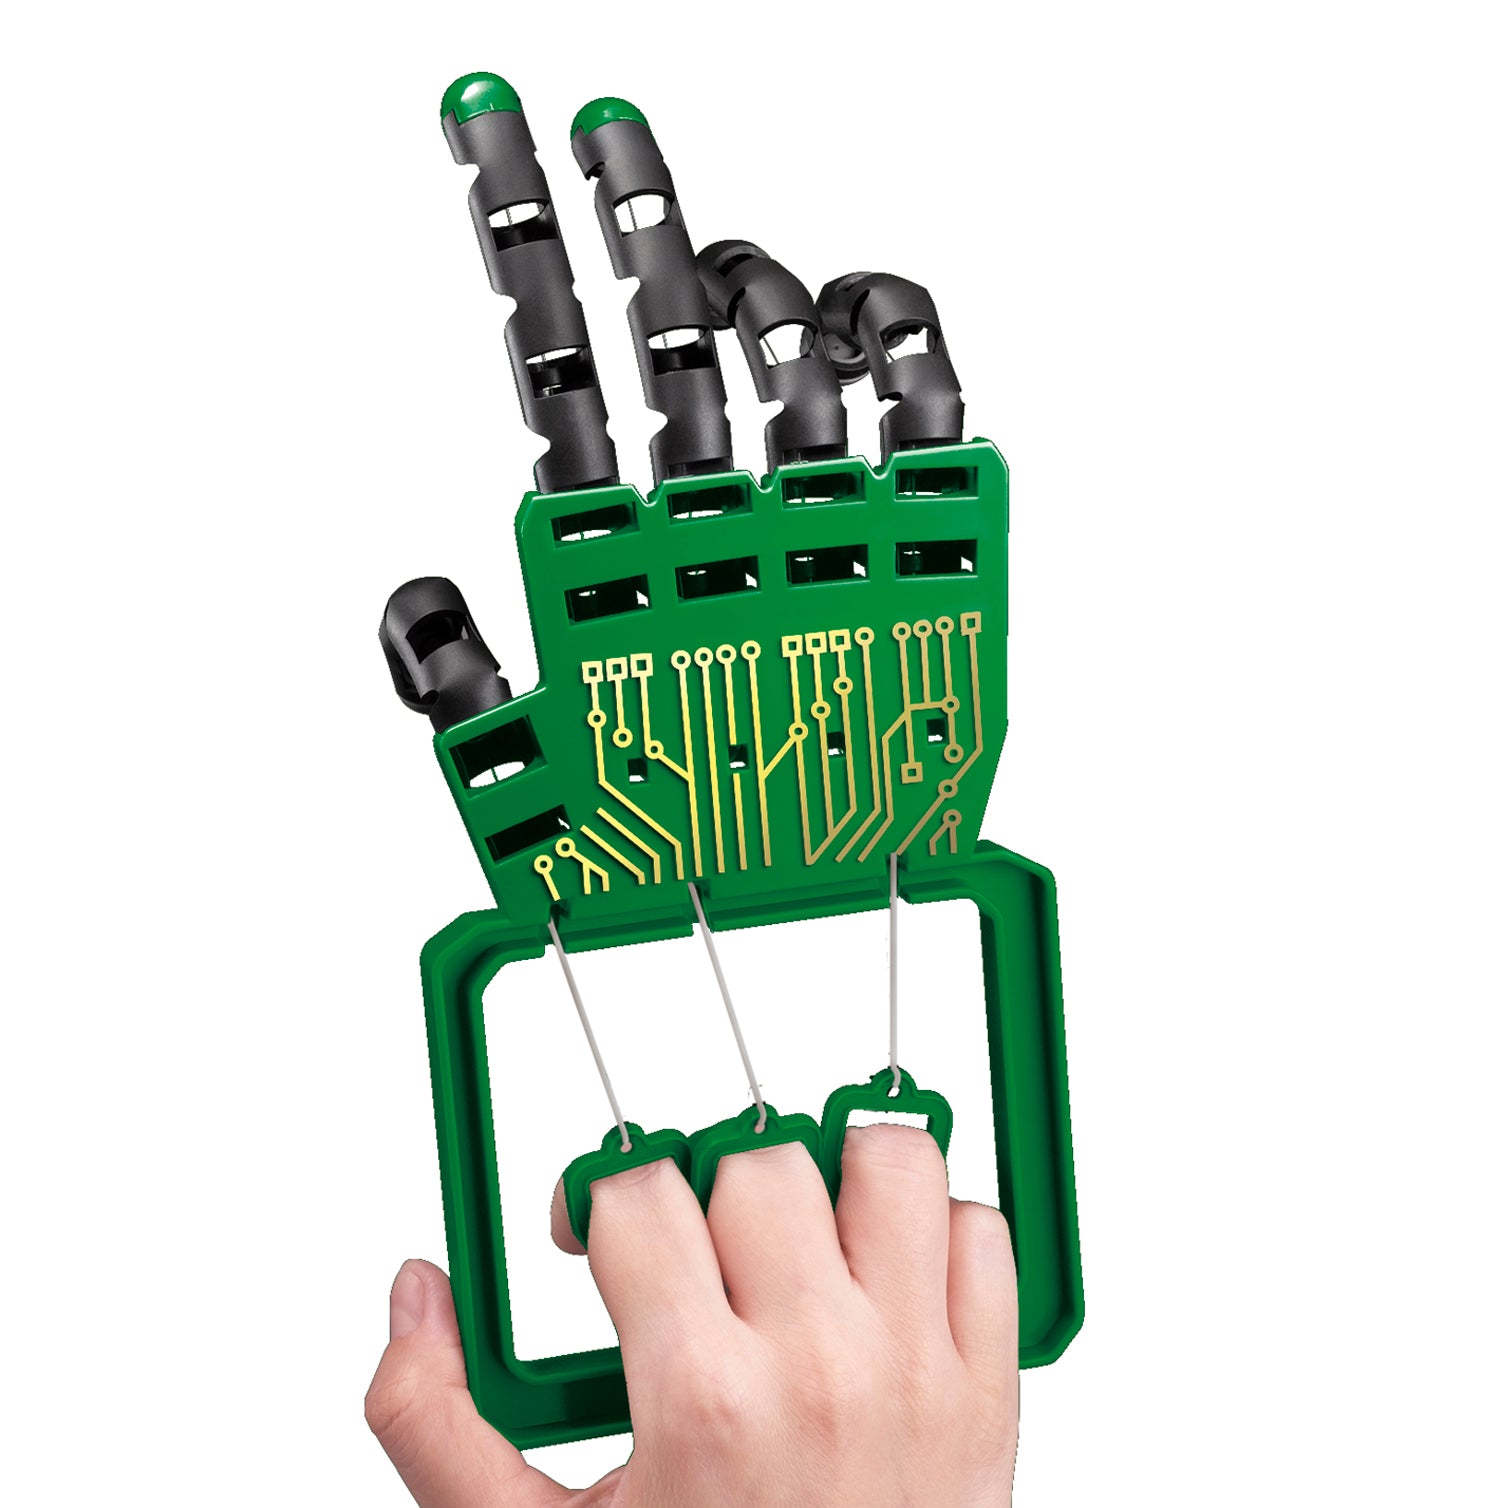 4M KidzLabs – Robotic Hand